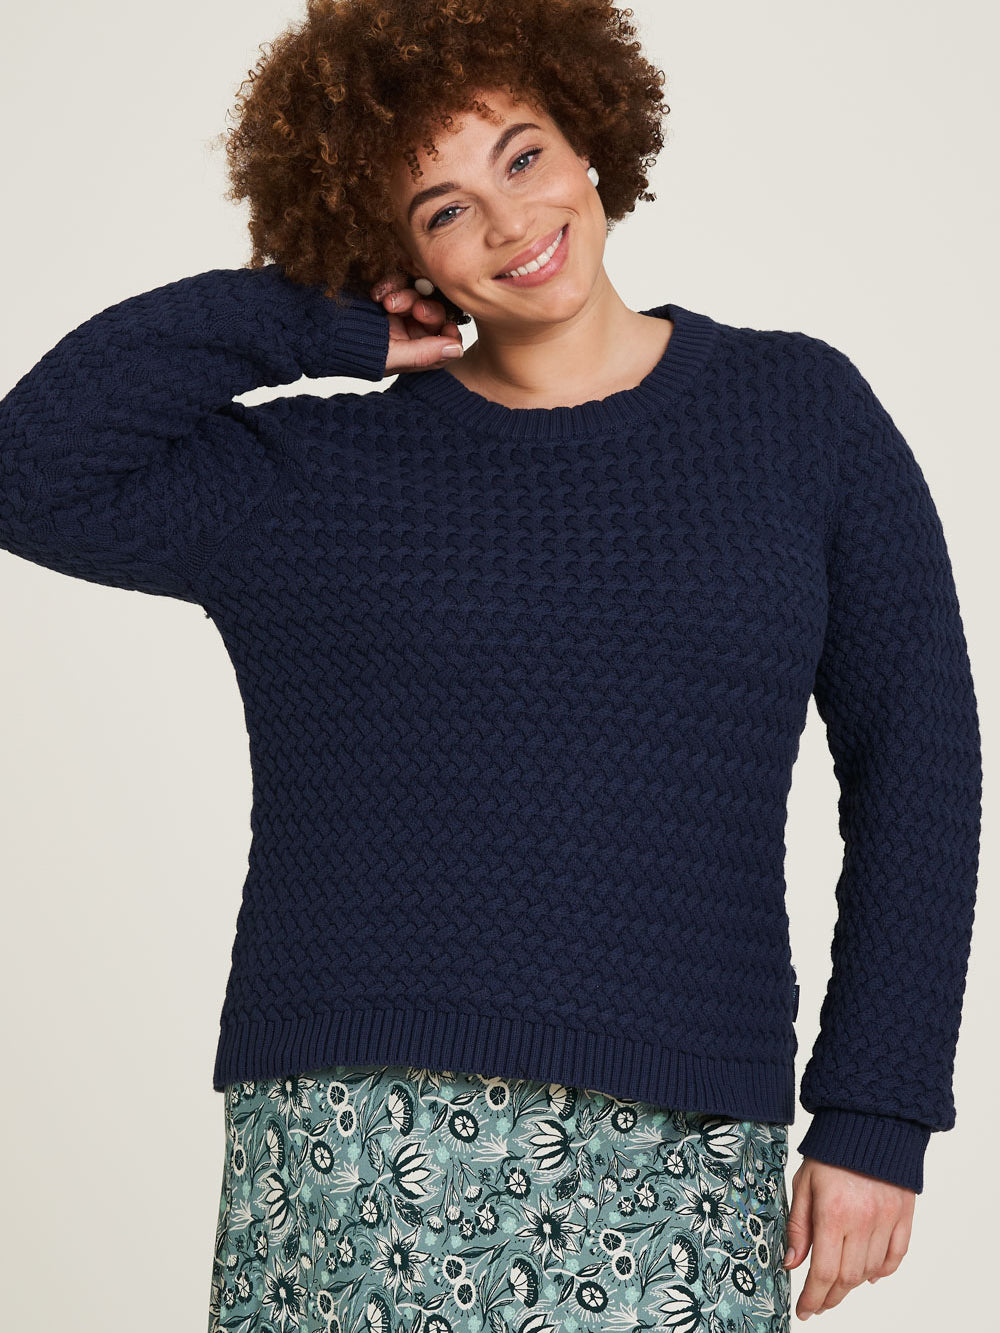 warm knitted sweater dark navy